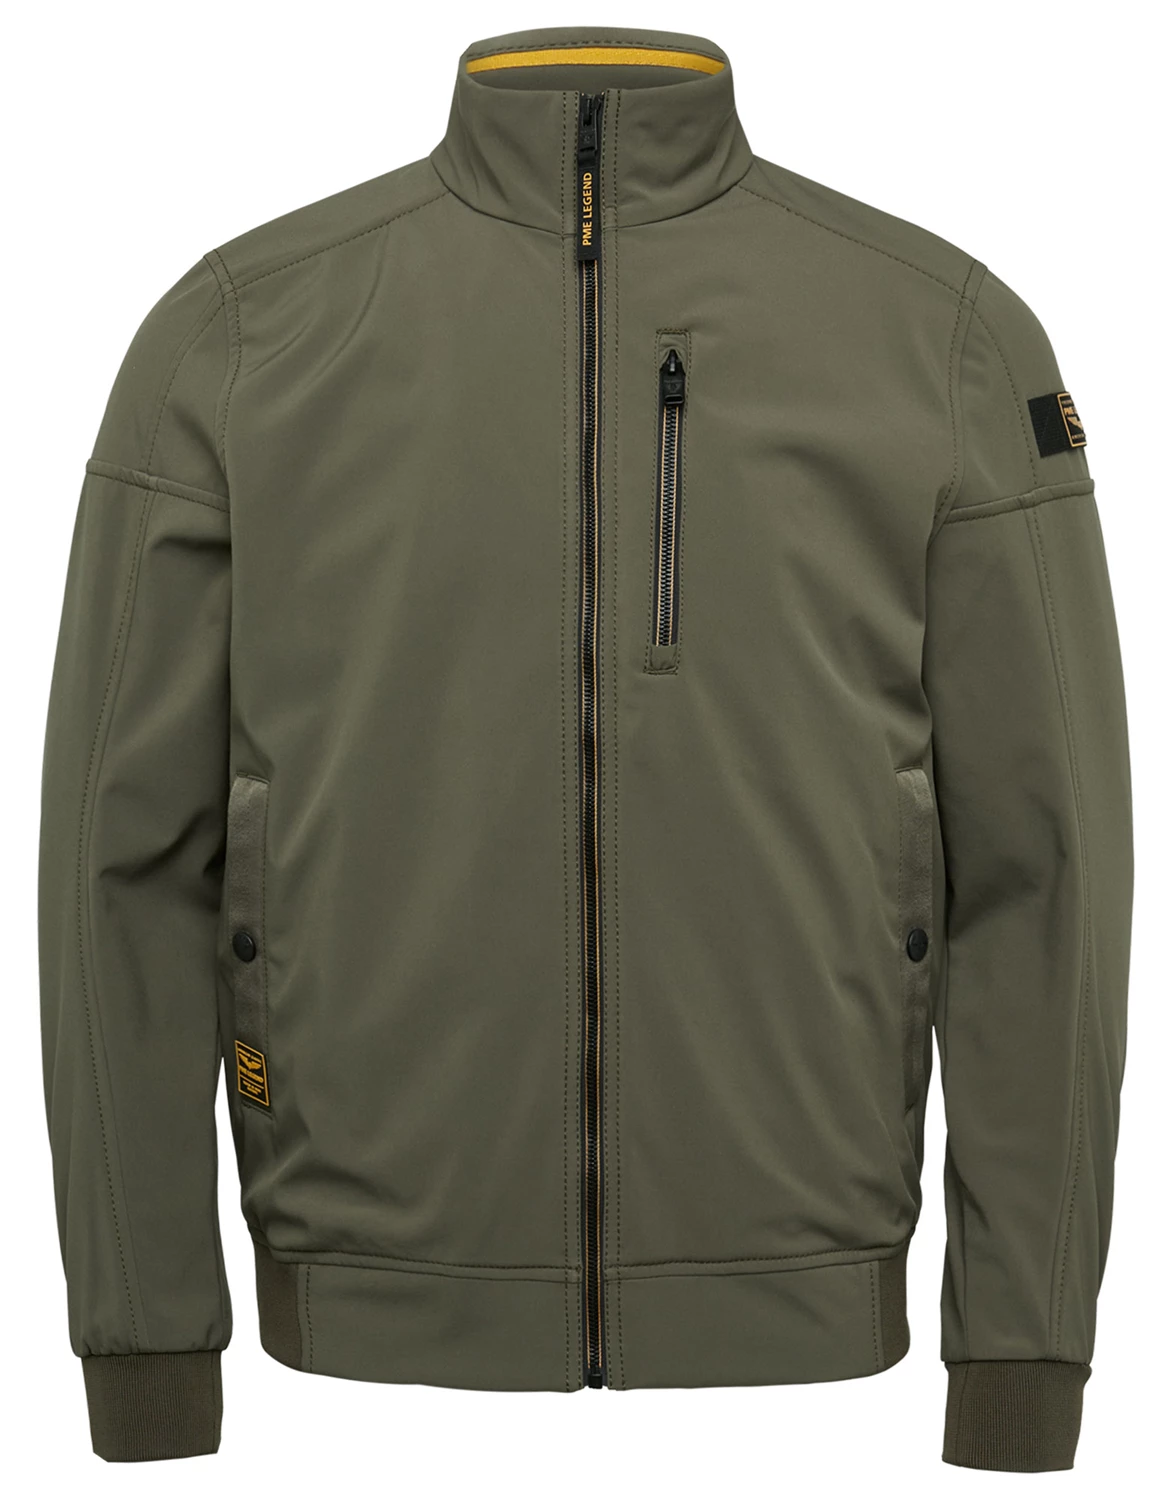 toewijding Veel Humaan PME Legend Bomber jacket SKYGLIDER 3.0 Softsh PJA2302105 leger groen kopen  bij The Stone